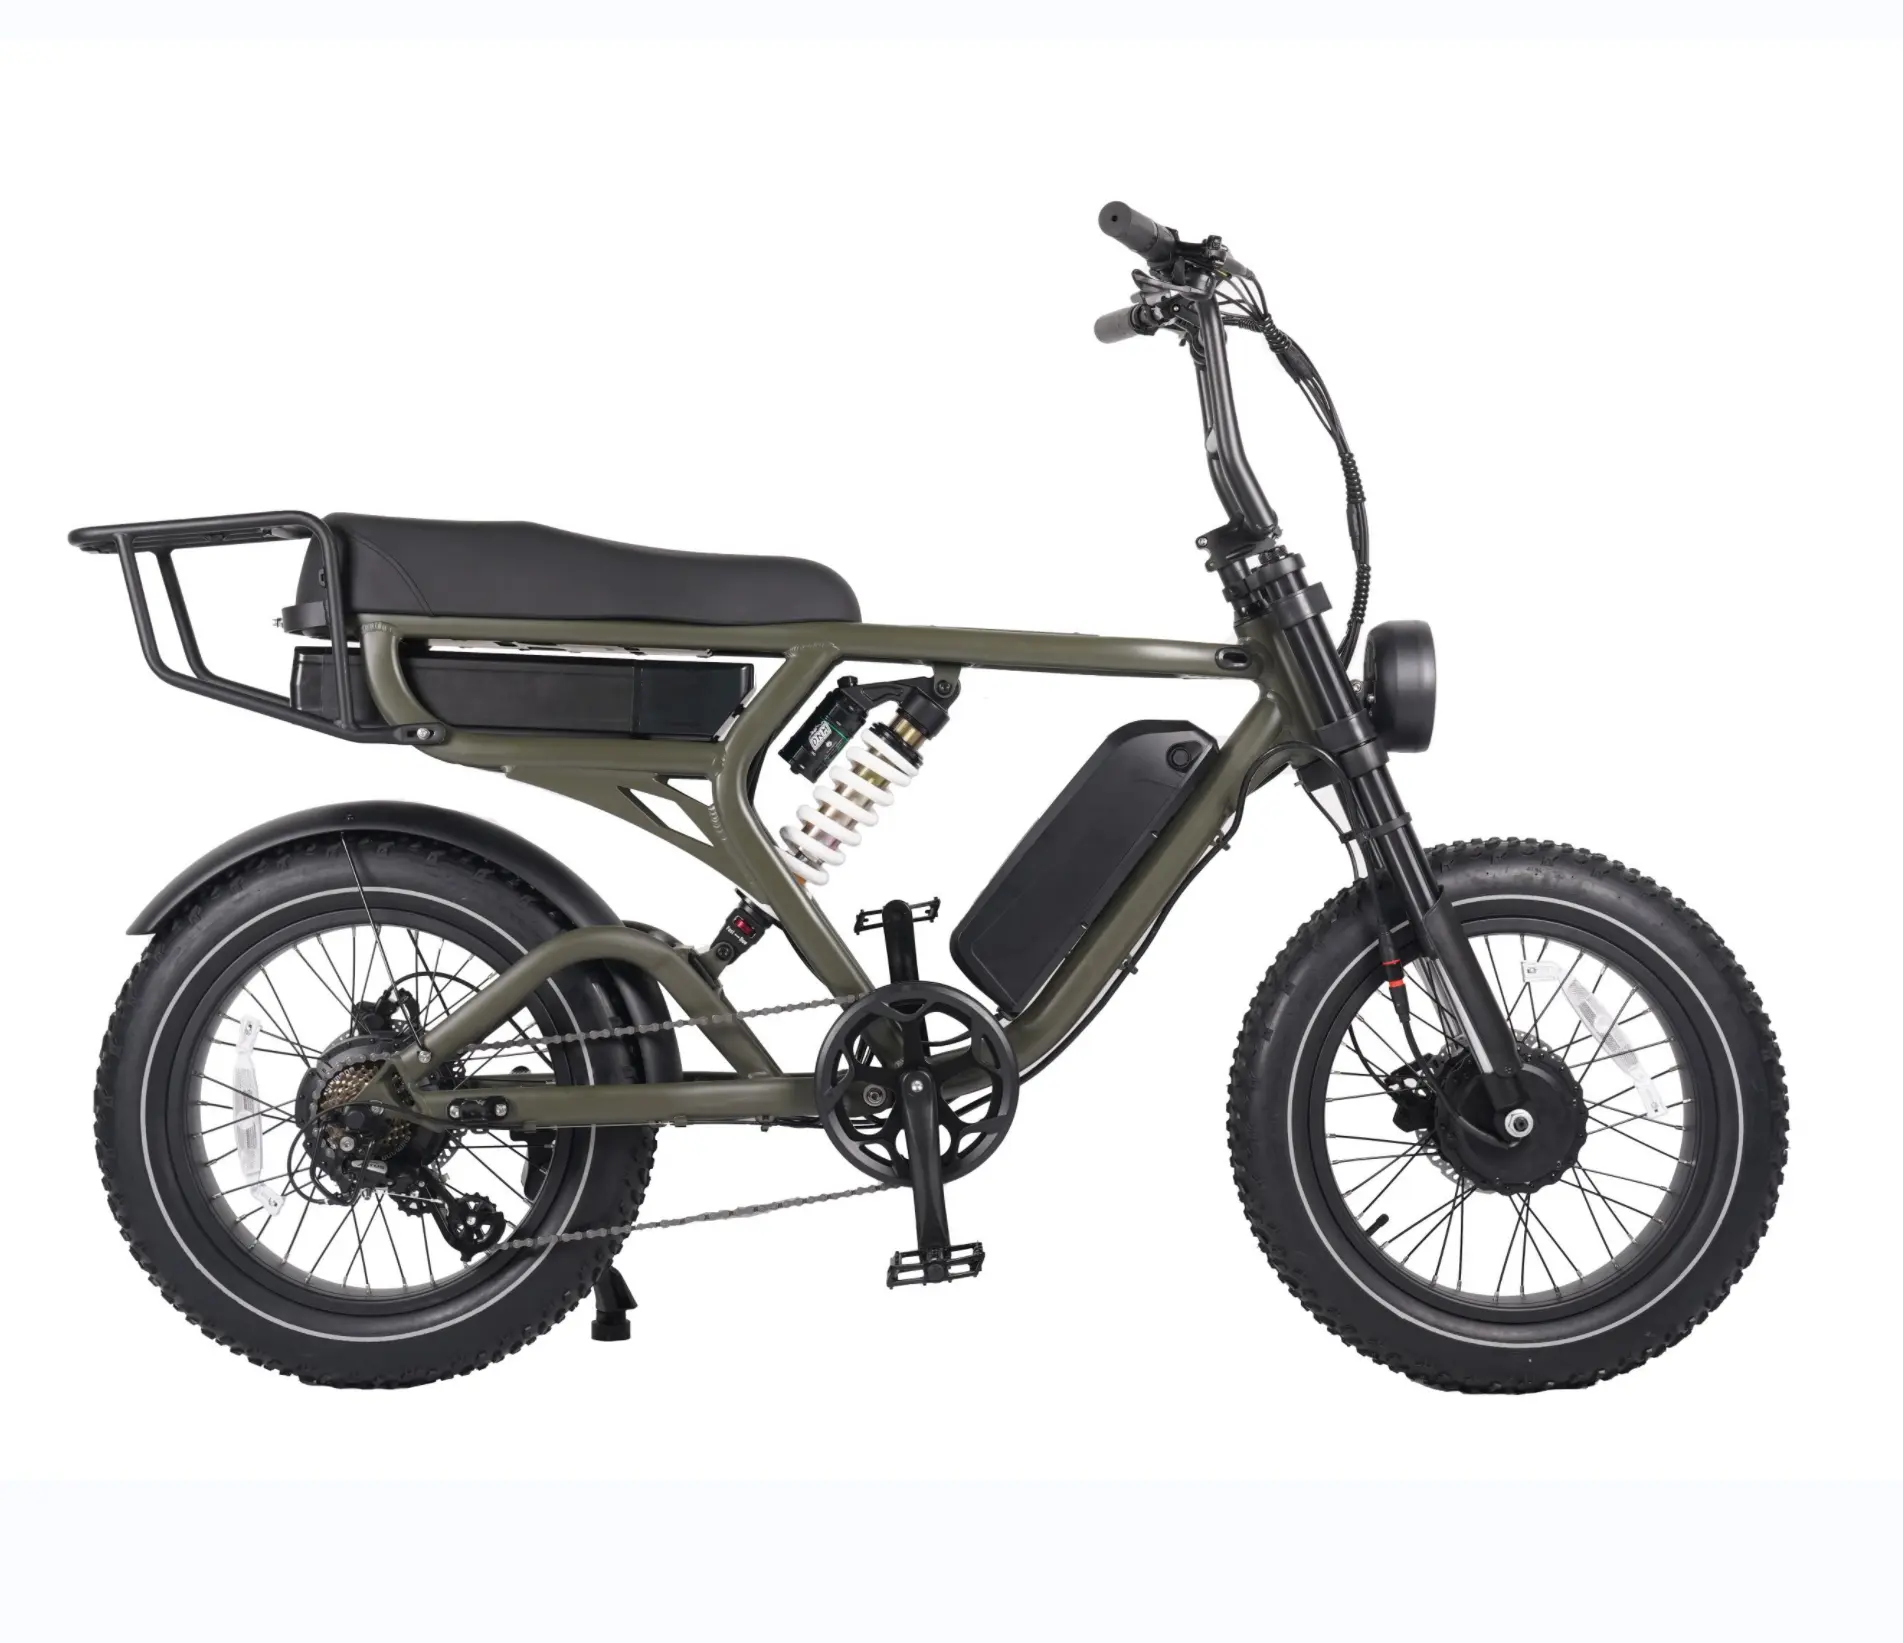 Sospensione in alluminio all'ingrosso Bafang 750W E bici doppio motore 48v 20ah 15ah batteria al litio bicicletta elettrica 20 pollici grasso pneumatico bici